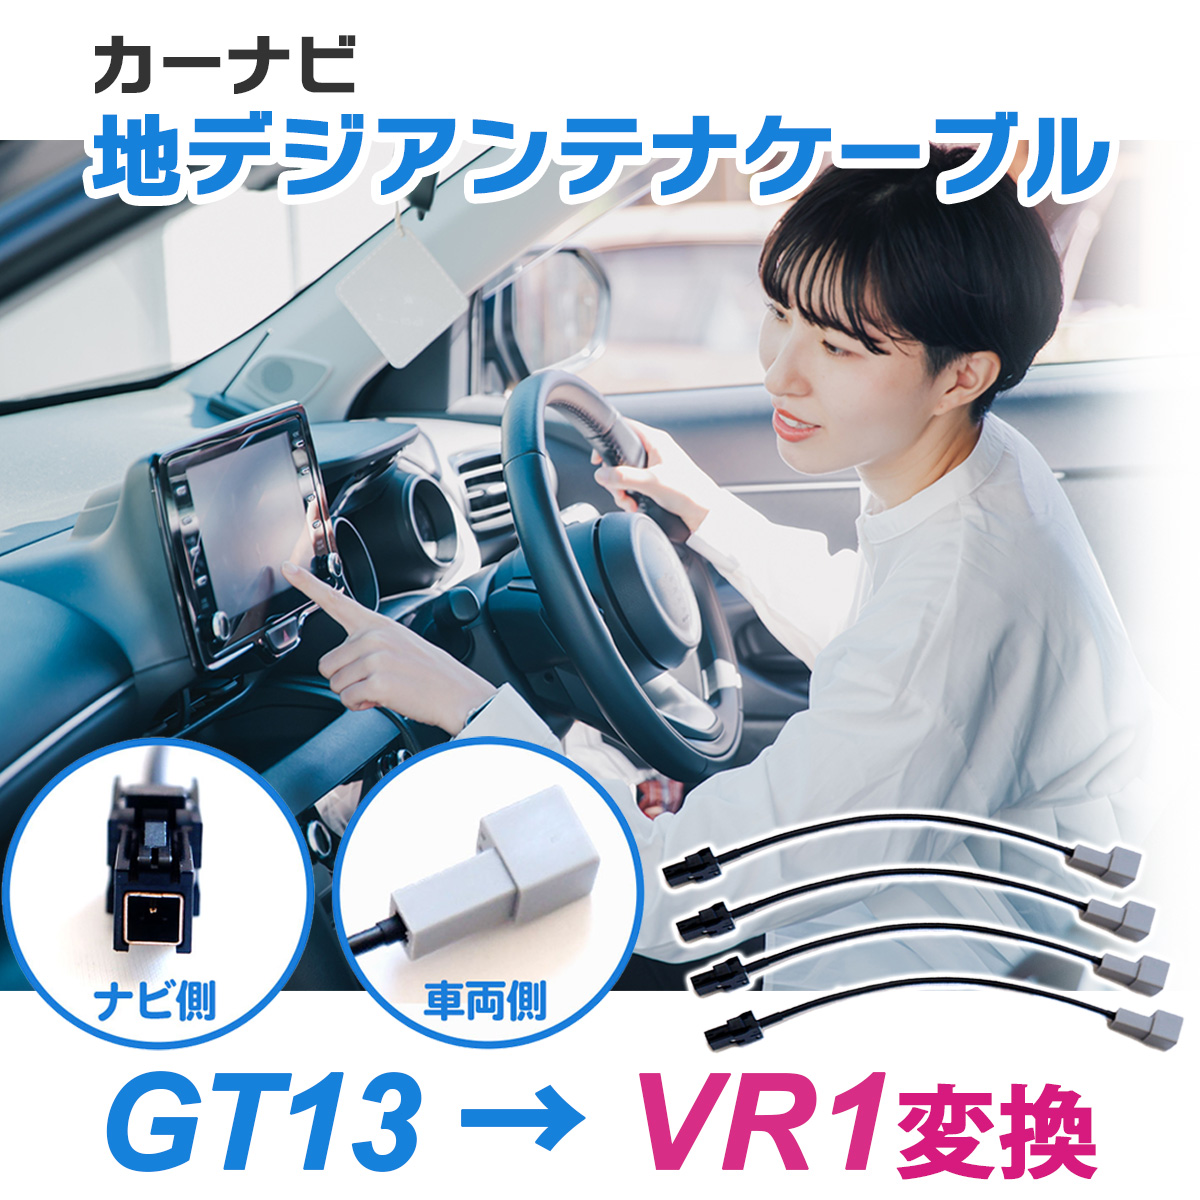 変換ケーブルセット GT13 → VR1 変換 4本 トヨタ イクリプス